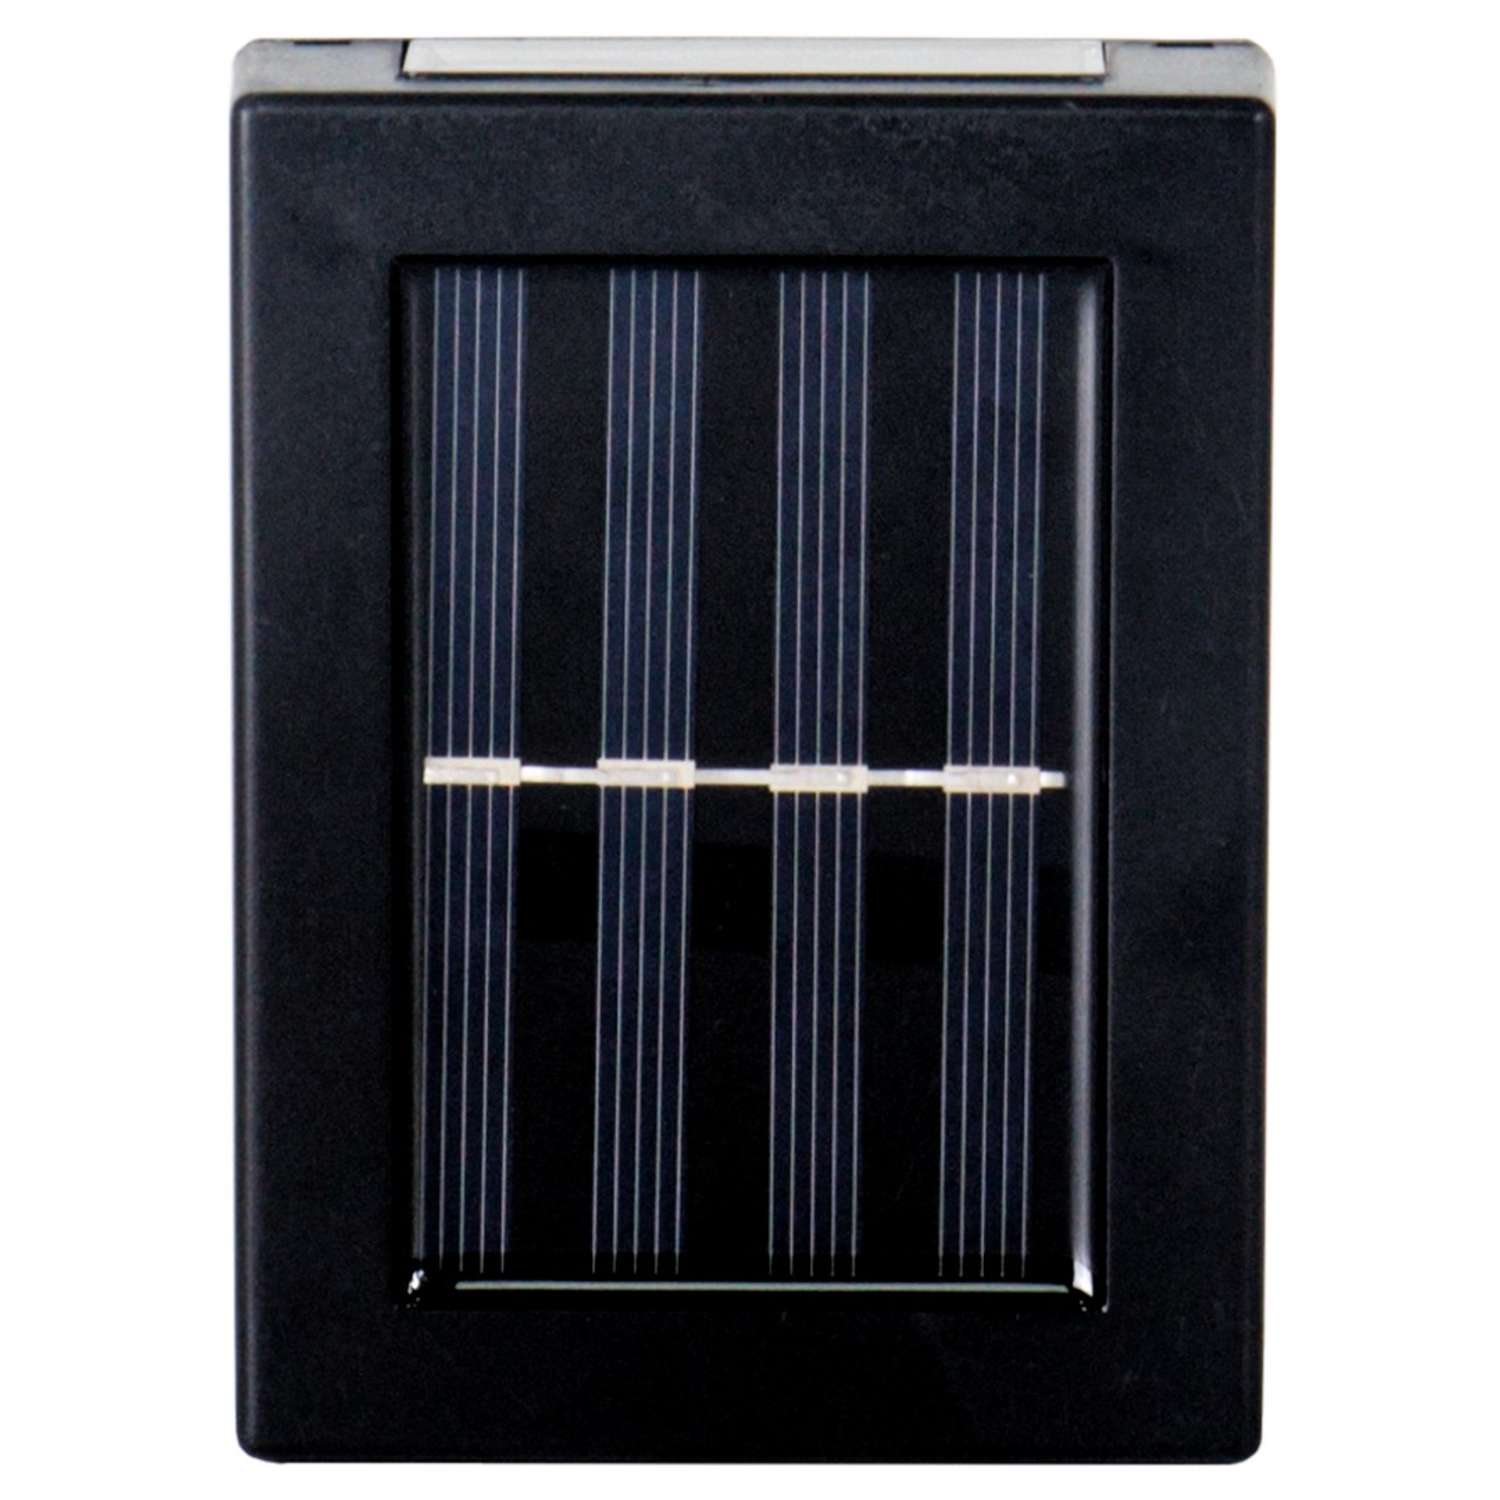 Светодиодный светильник GLANZEN RPD-0003-1-solar-2pcs на солнечных батареях 2 шт - фото 3